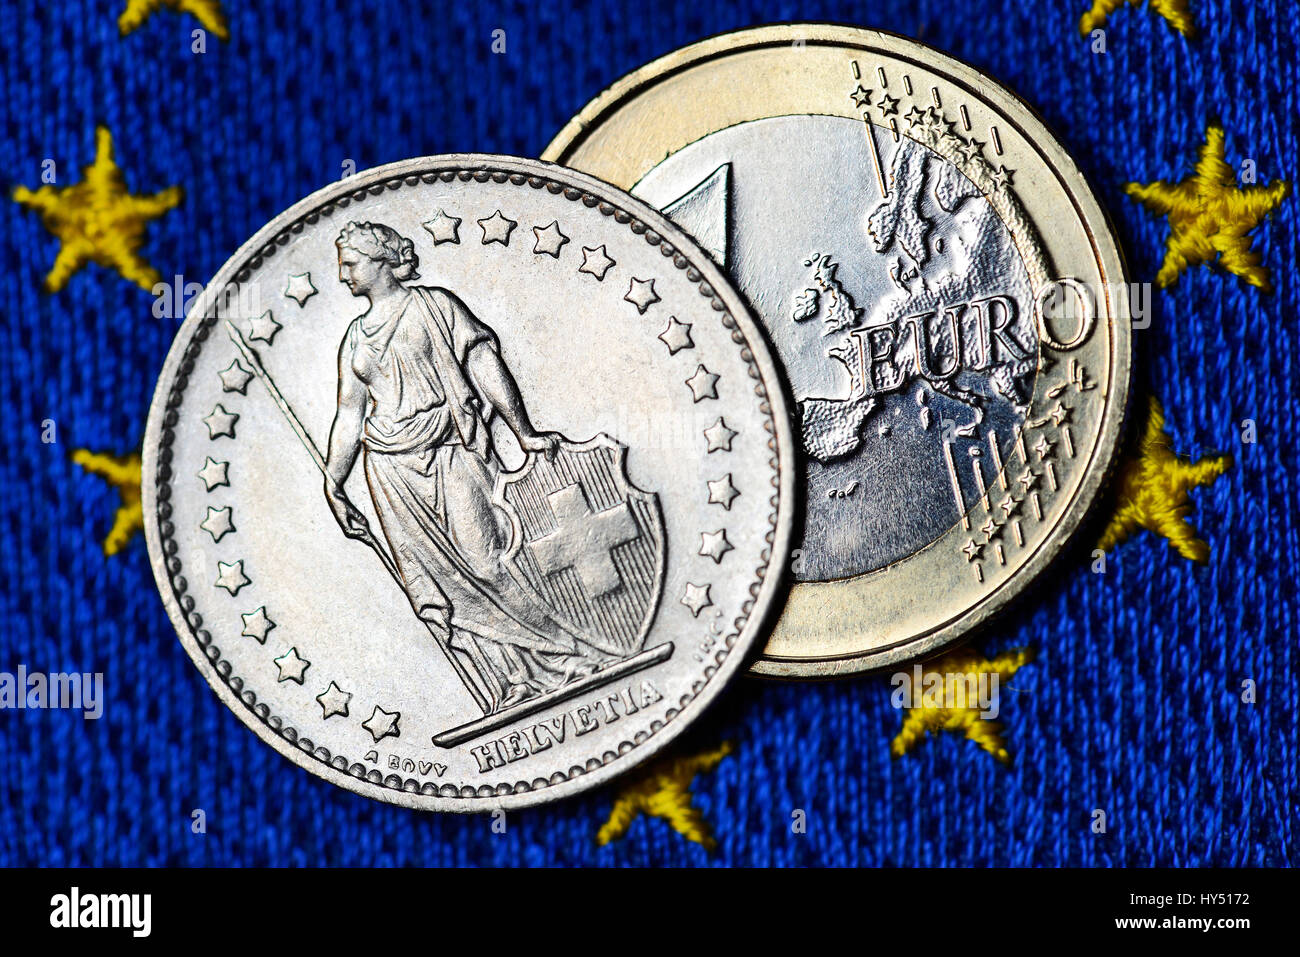 El franco suizo y el euro en la bandera de la UE, fin de la franco-menos  rumbo al euro, Schweizer Franken und Euro auf UE-Fahne, Beendigung des  Franken-Mindest Fotografía de stock -